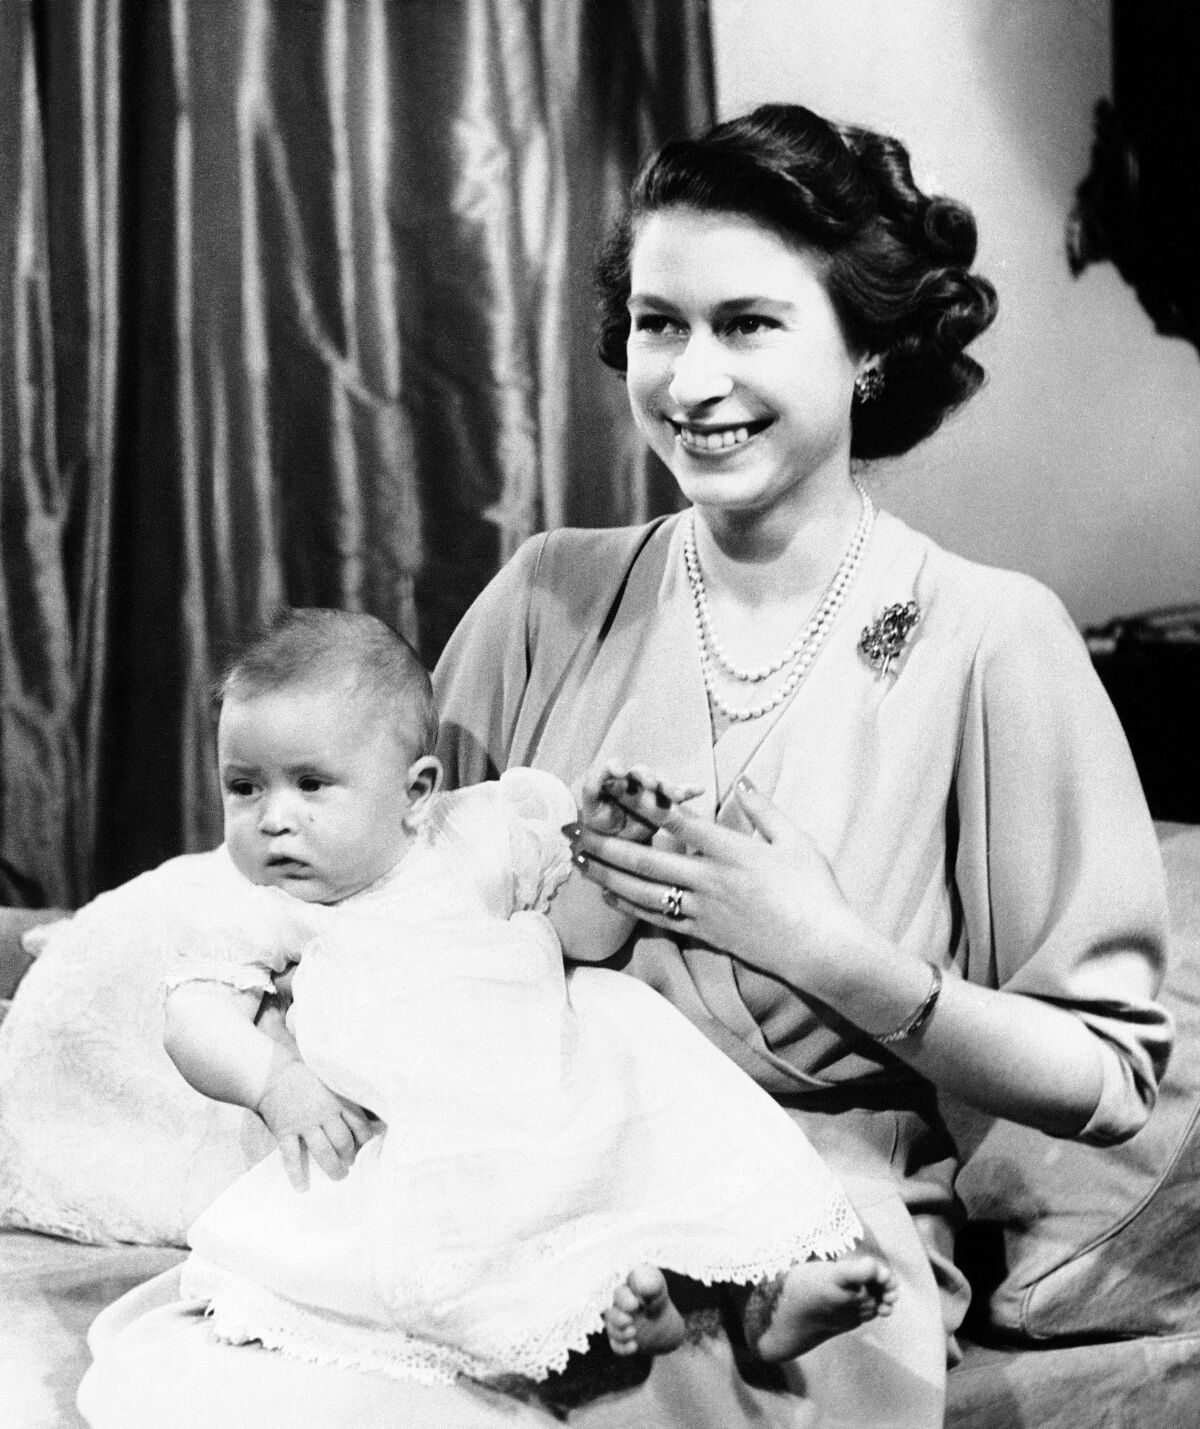 ثم الأميرة إليزابيث مع الطفل الأمير تشارلز